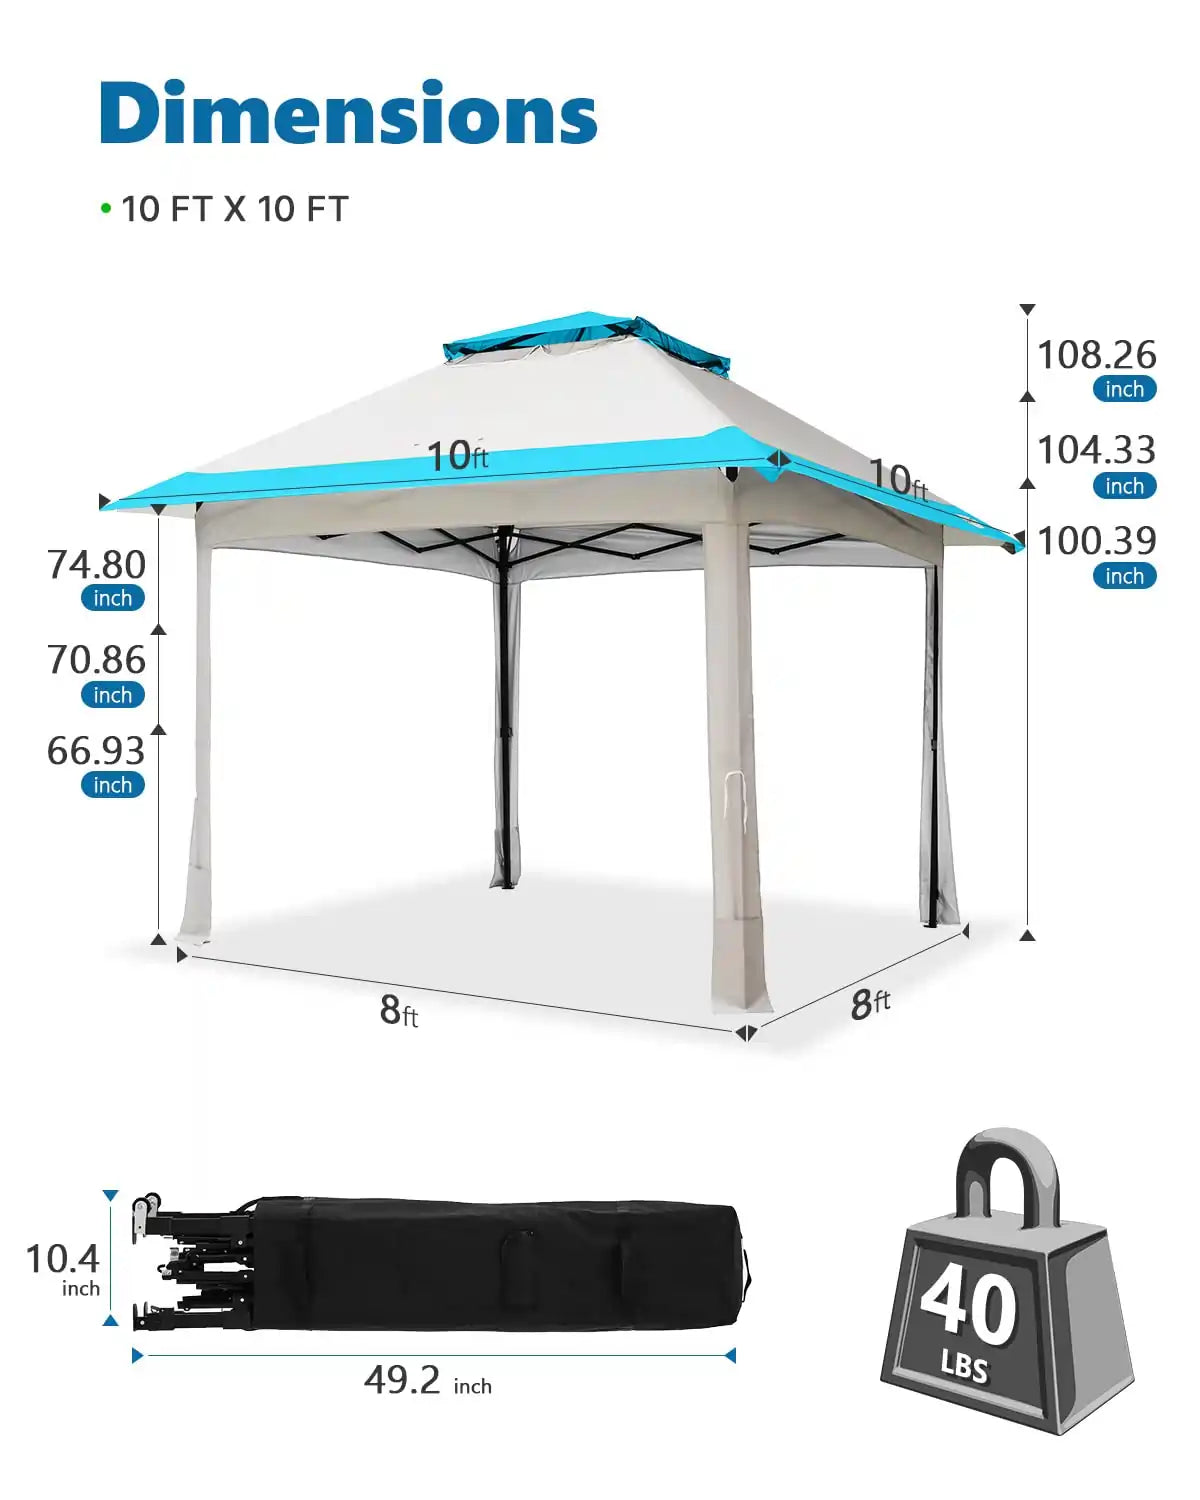 Blue 10x10 gazebo tent dimensions#color_blue